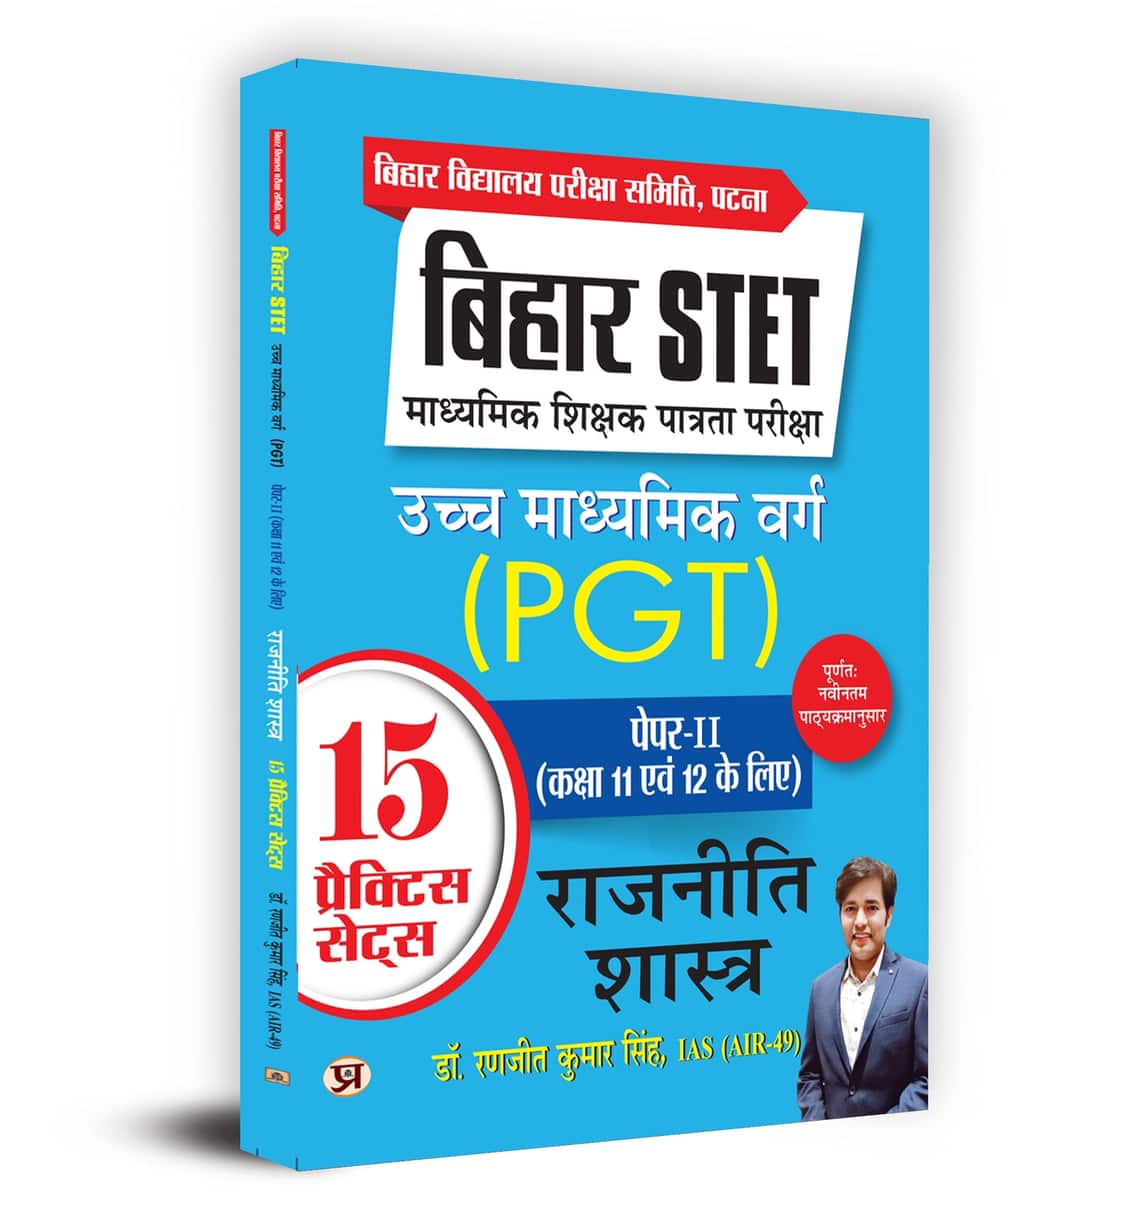 Bihar STET Madhyamik Shikshak Patrata Pariksha Uchch Madhyamik Varg Rajneeti Shastra (PGT) Paper-2 (Class 11 & 12) Political Science 15 Practice Sets 